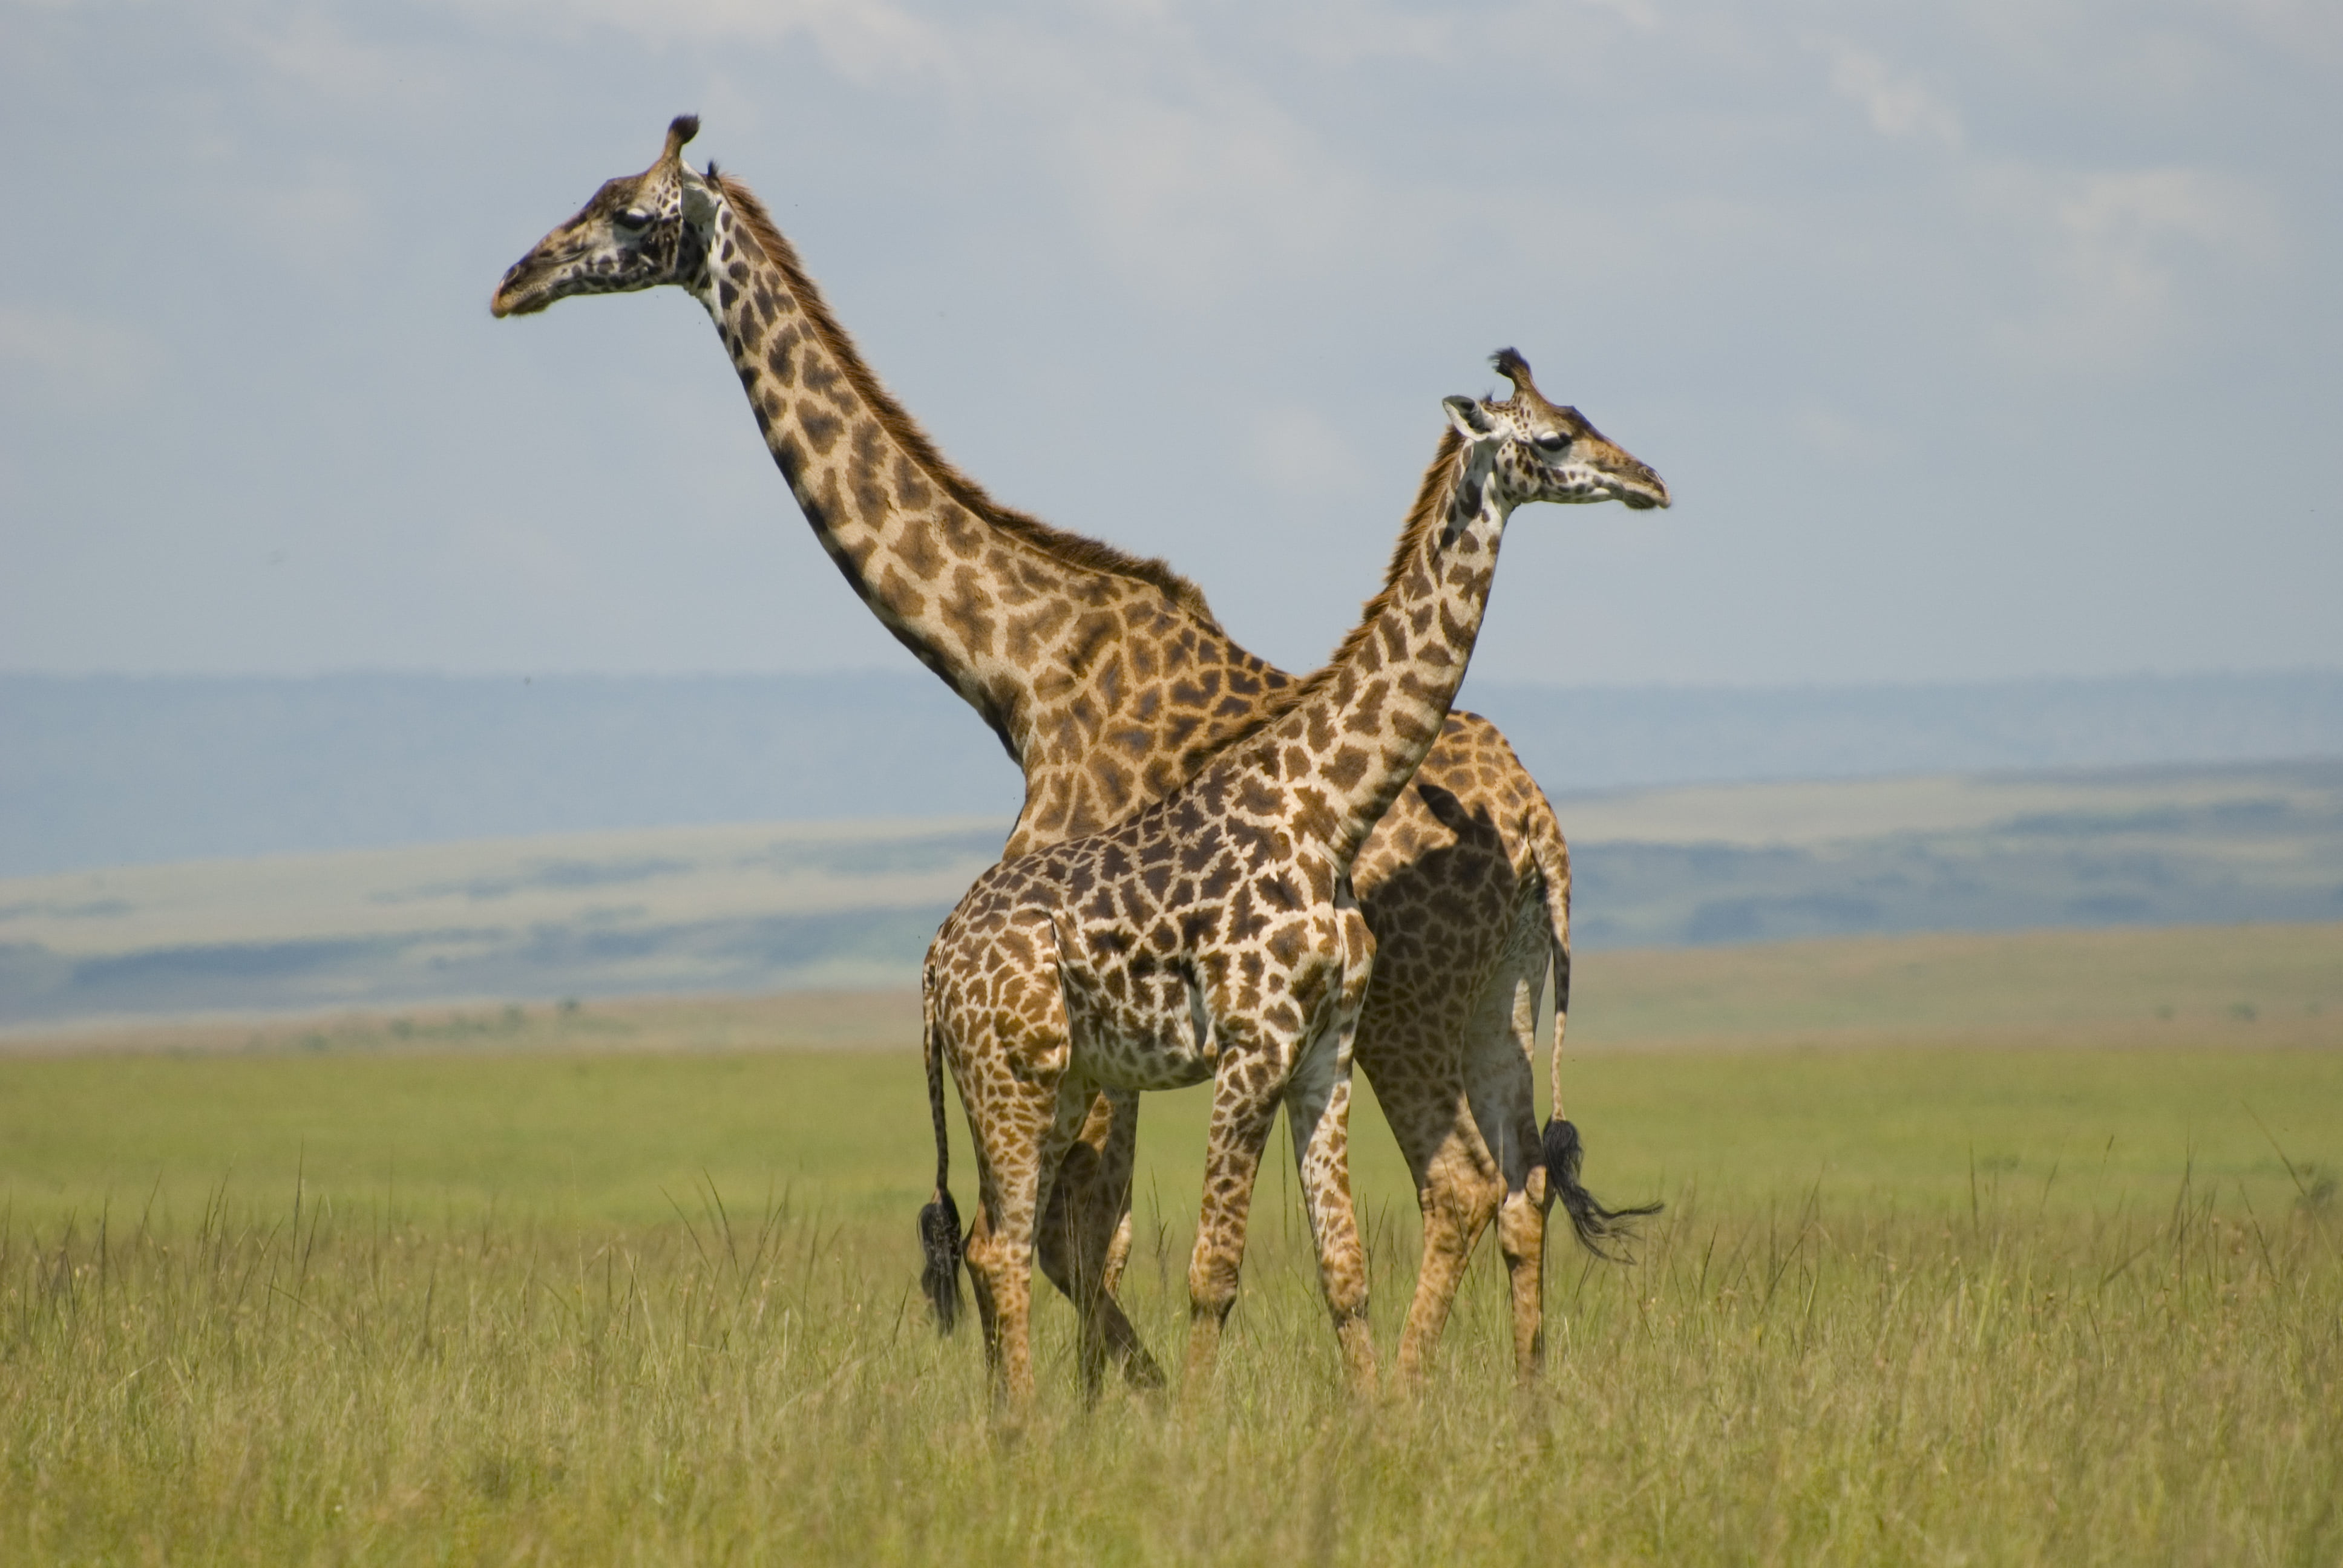 two Giraffe in grass field, giraffes, masai mara, kenya